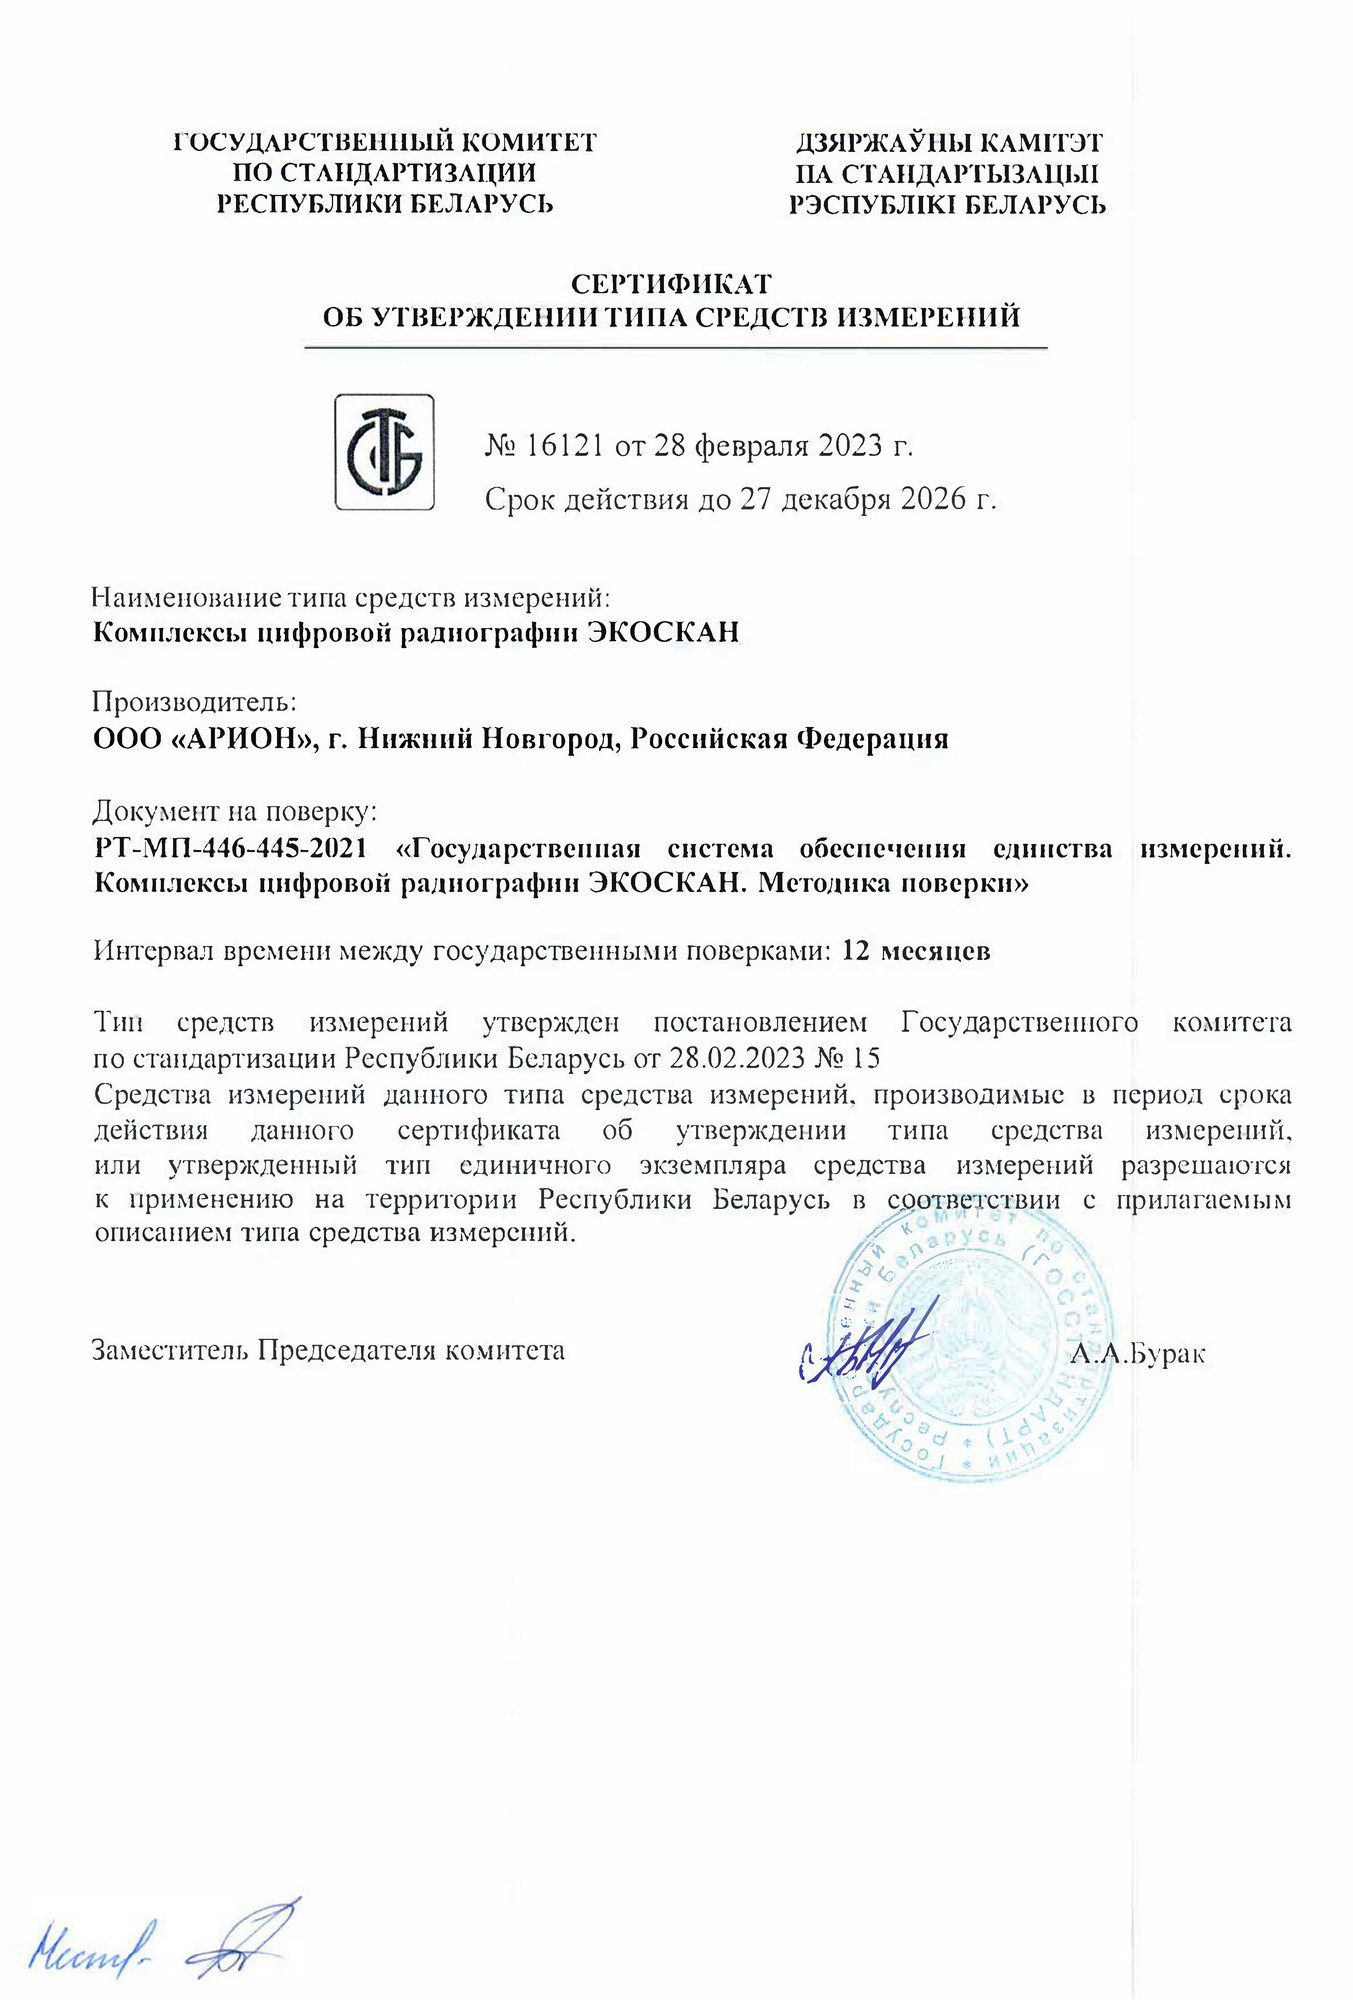 Сертификат об утверждении типа СИ в Республике Беларусь